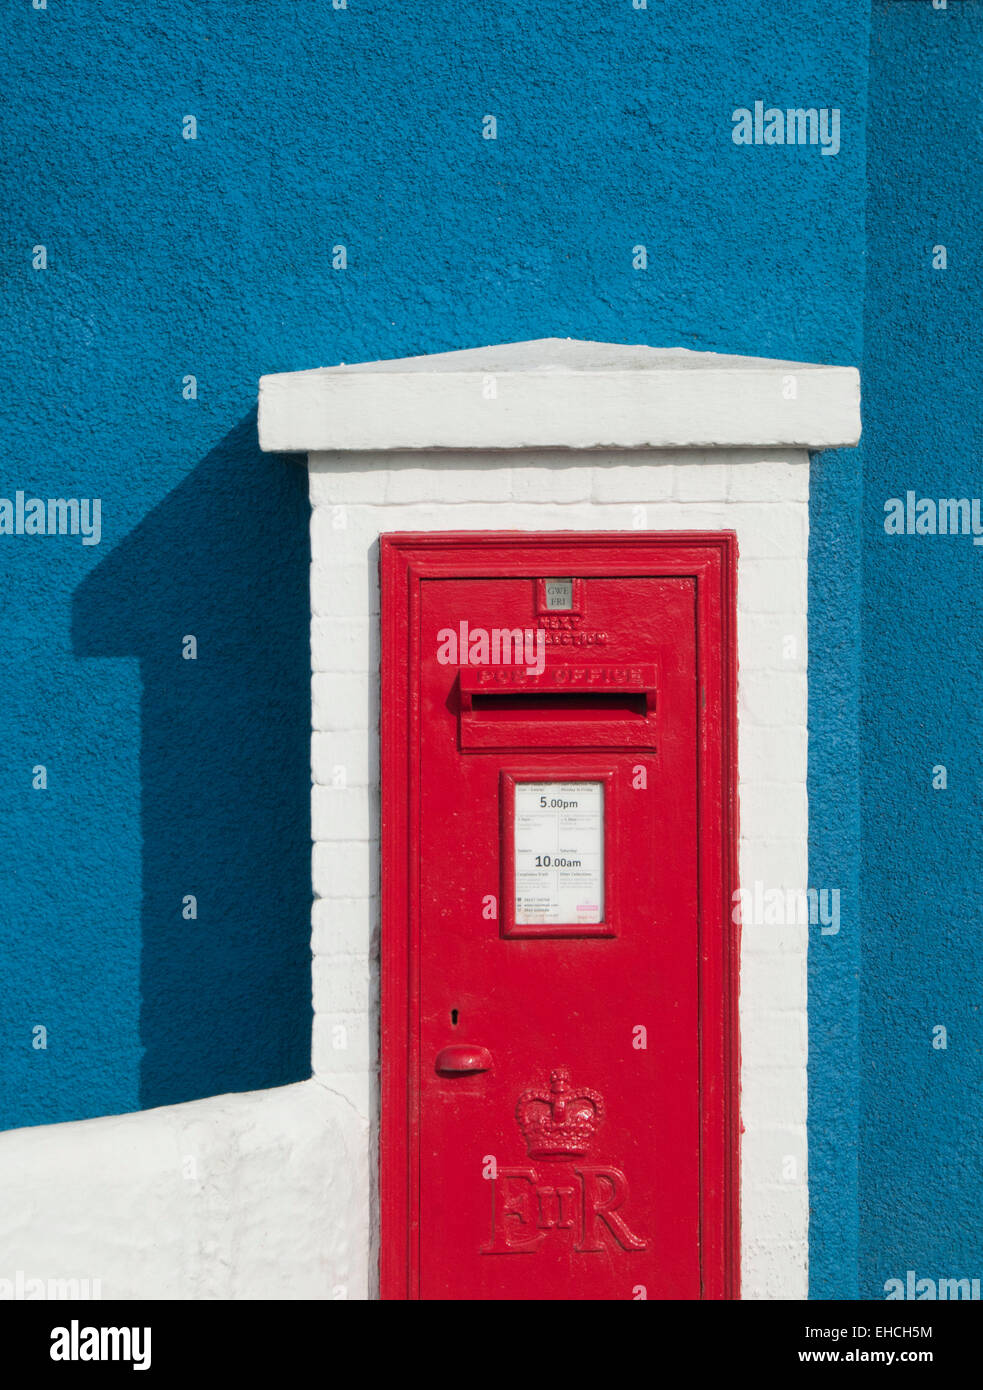 Boite aux lettres rouge vif contre un mur bleu, Llangefni, Anglesey, au nord du Pays de Galles, Royaume-Uni Banque D'Images